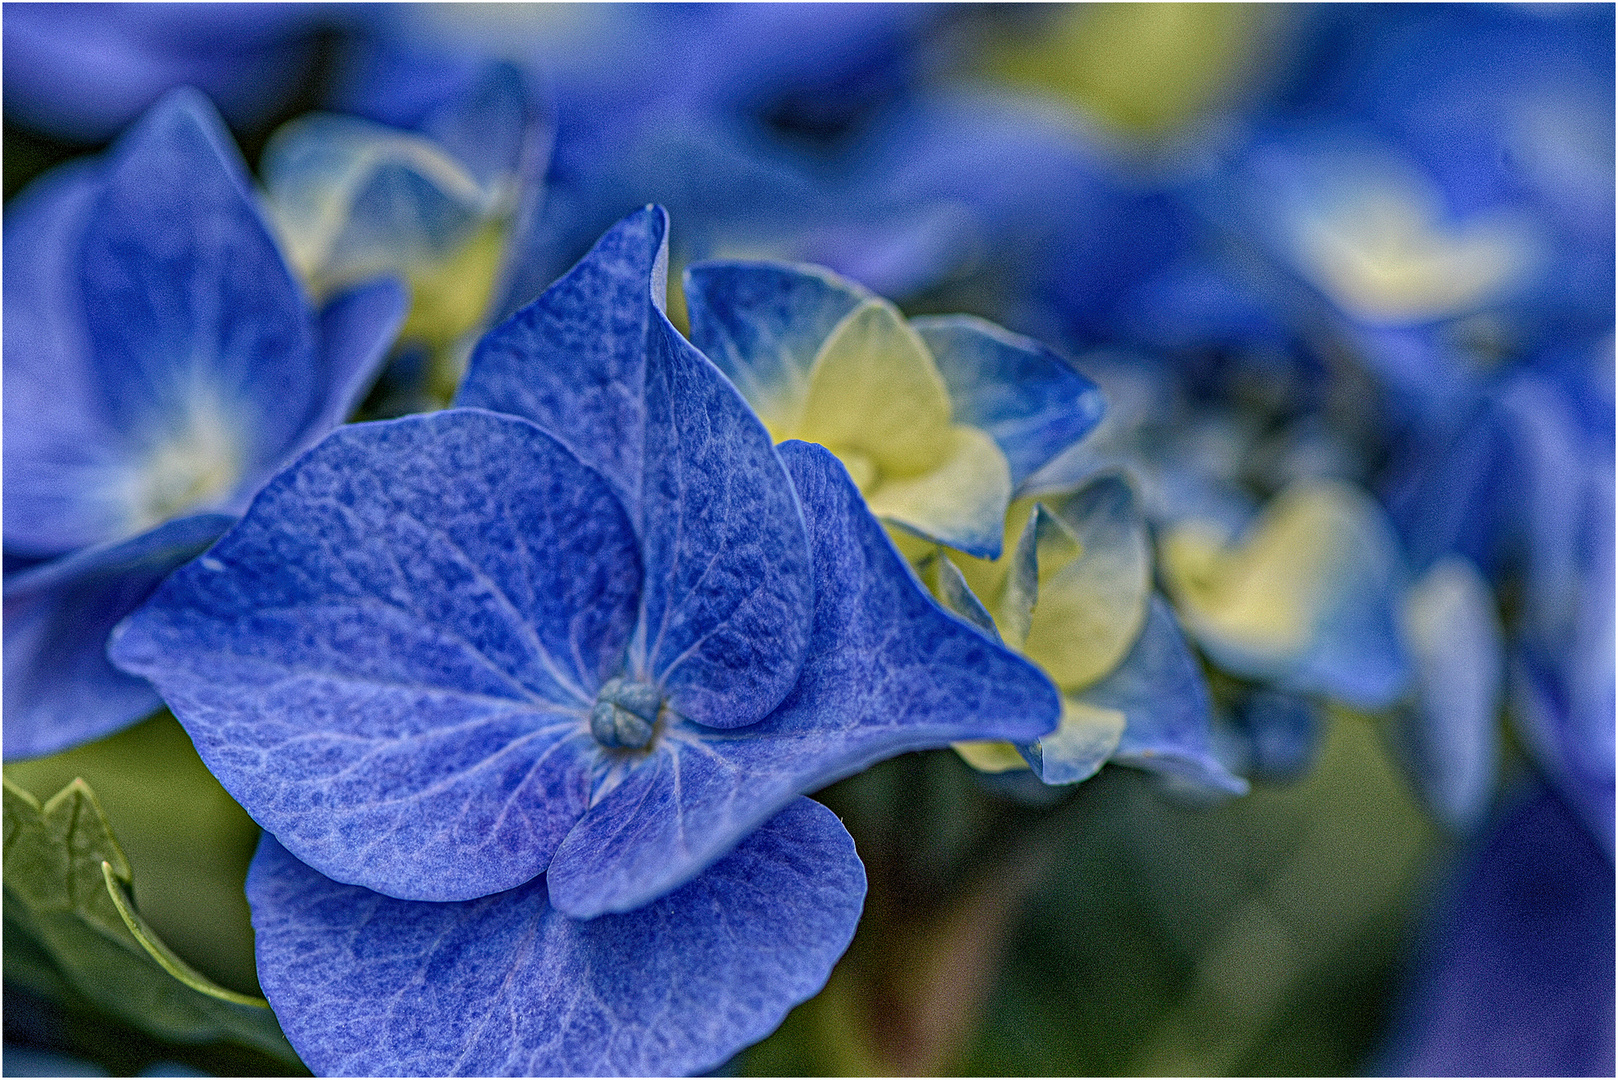 Hortensien Blüte in blau